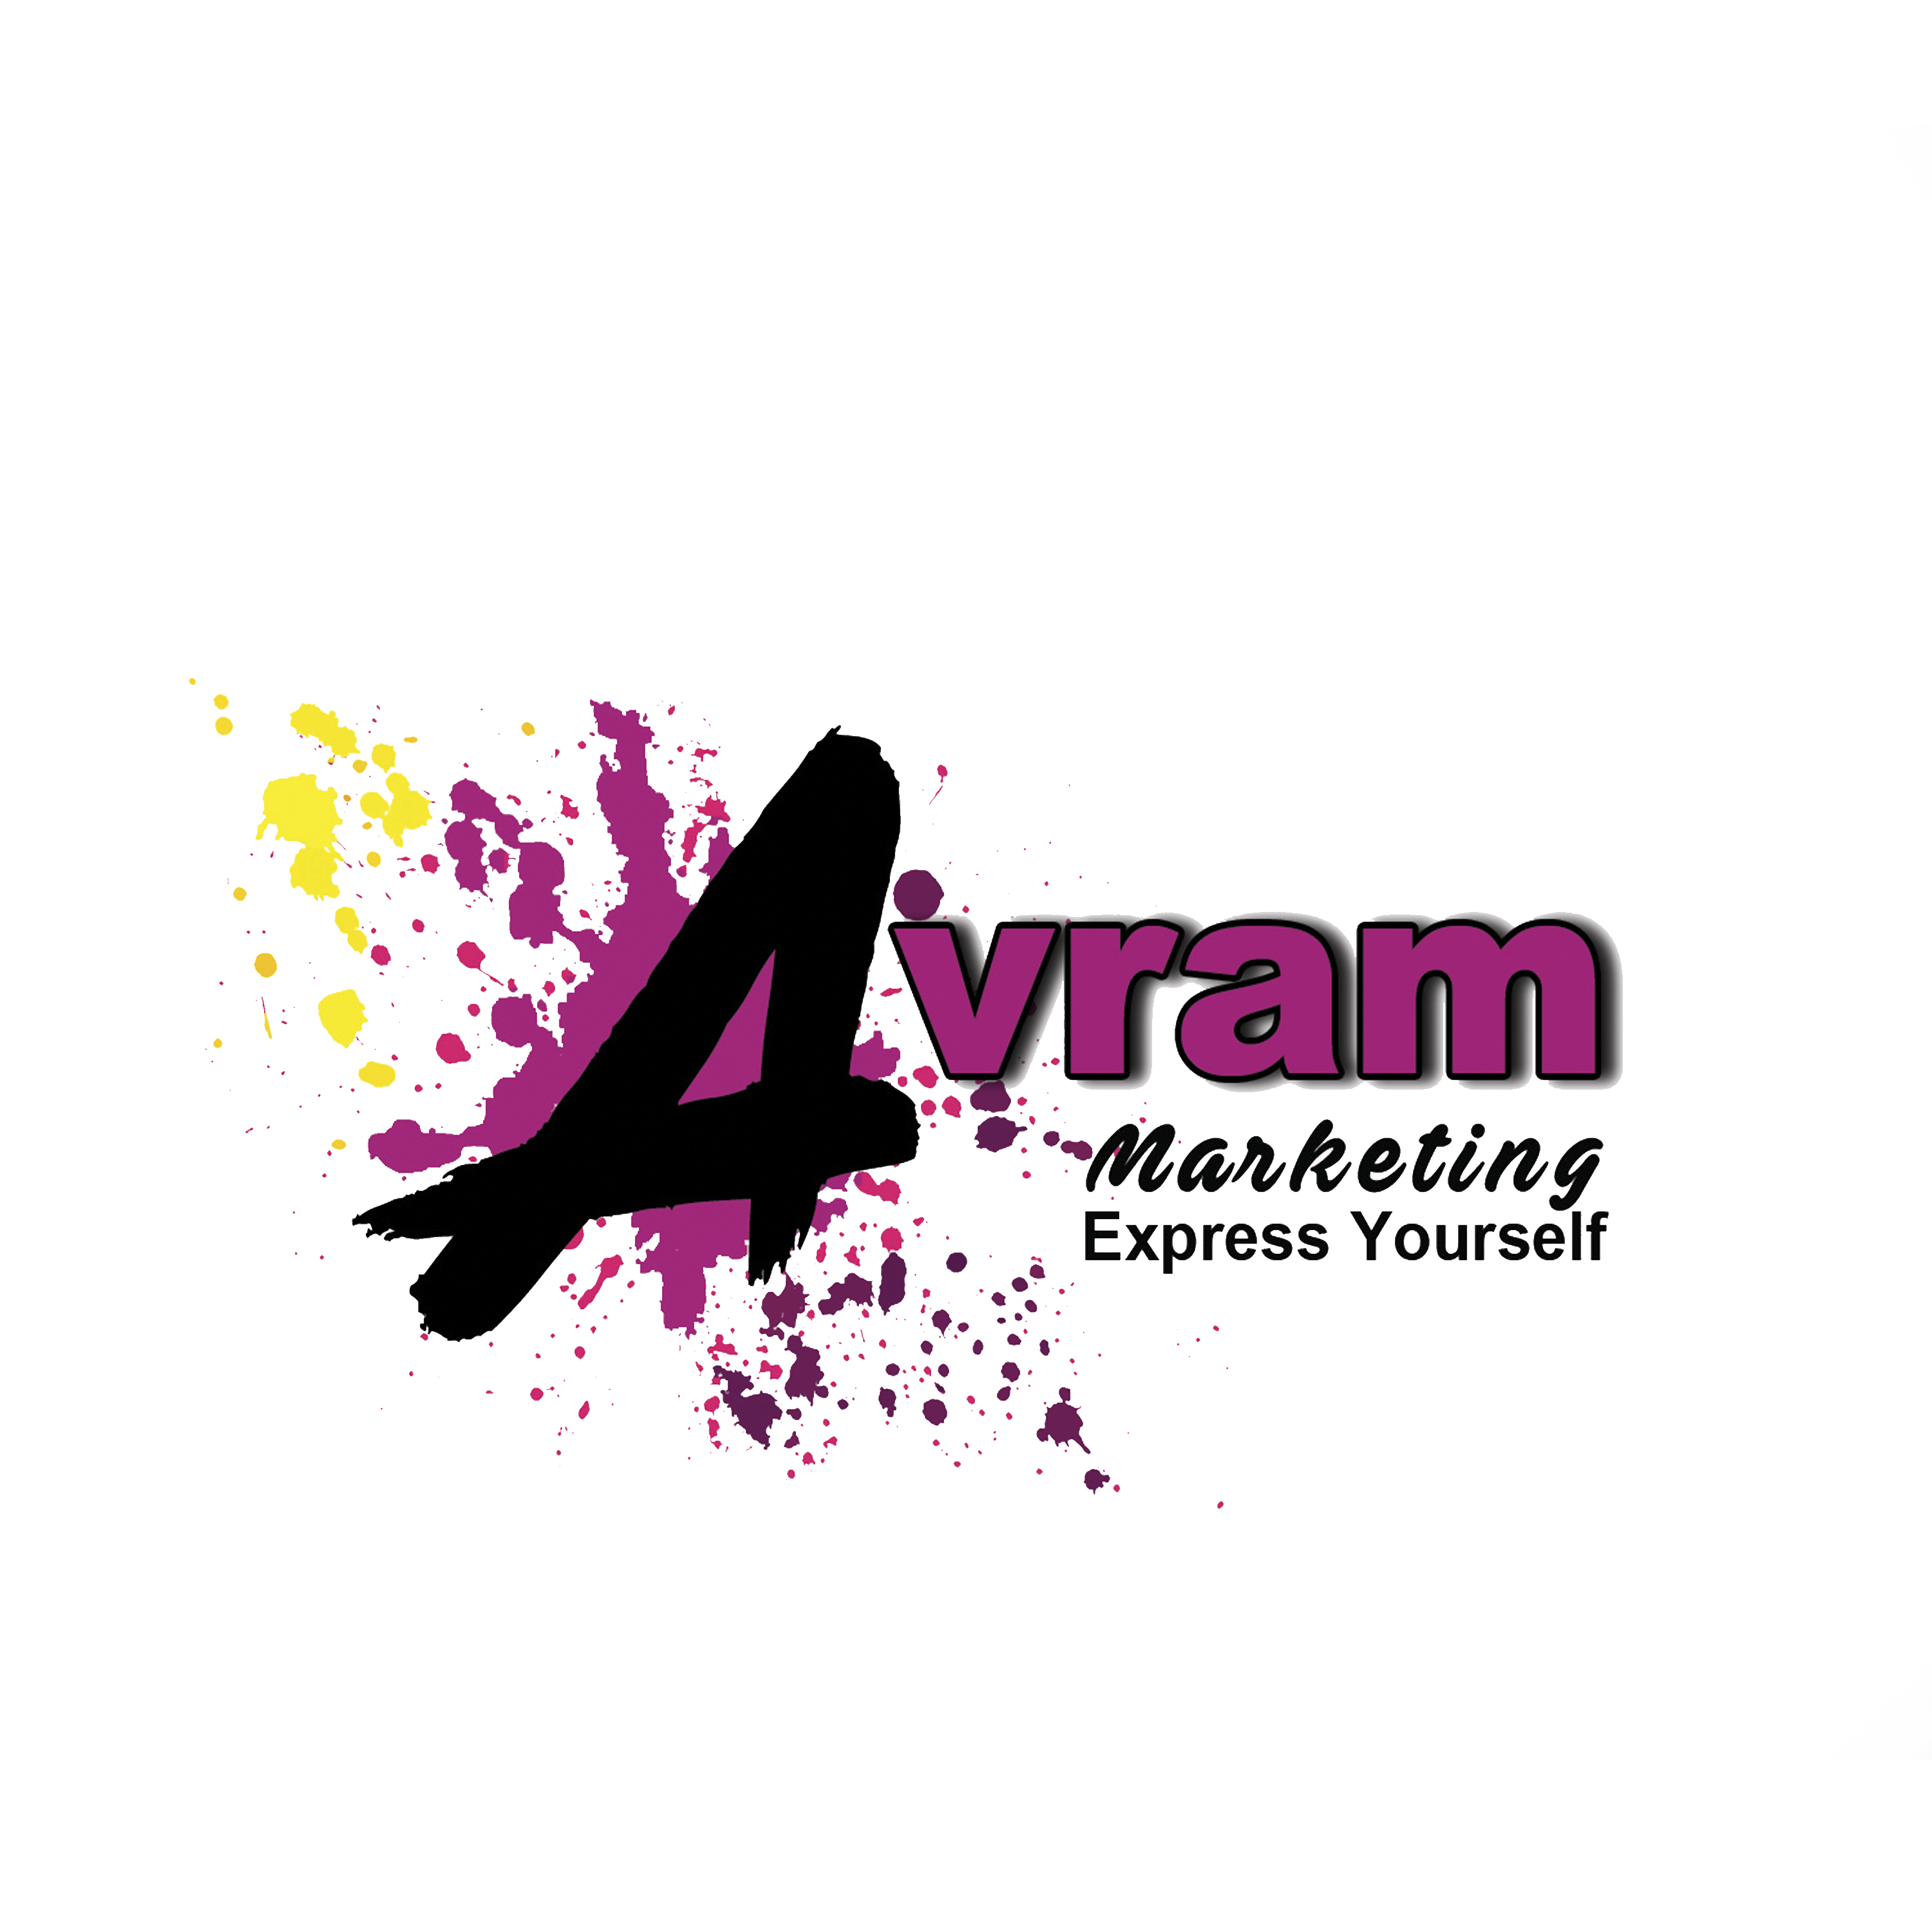 Avram Marketing logo